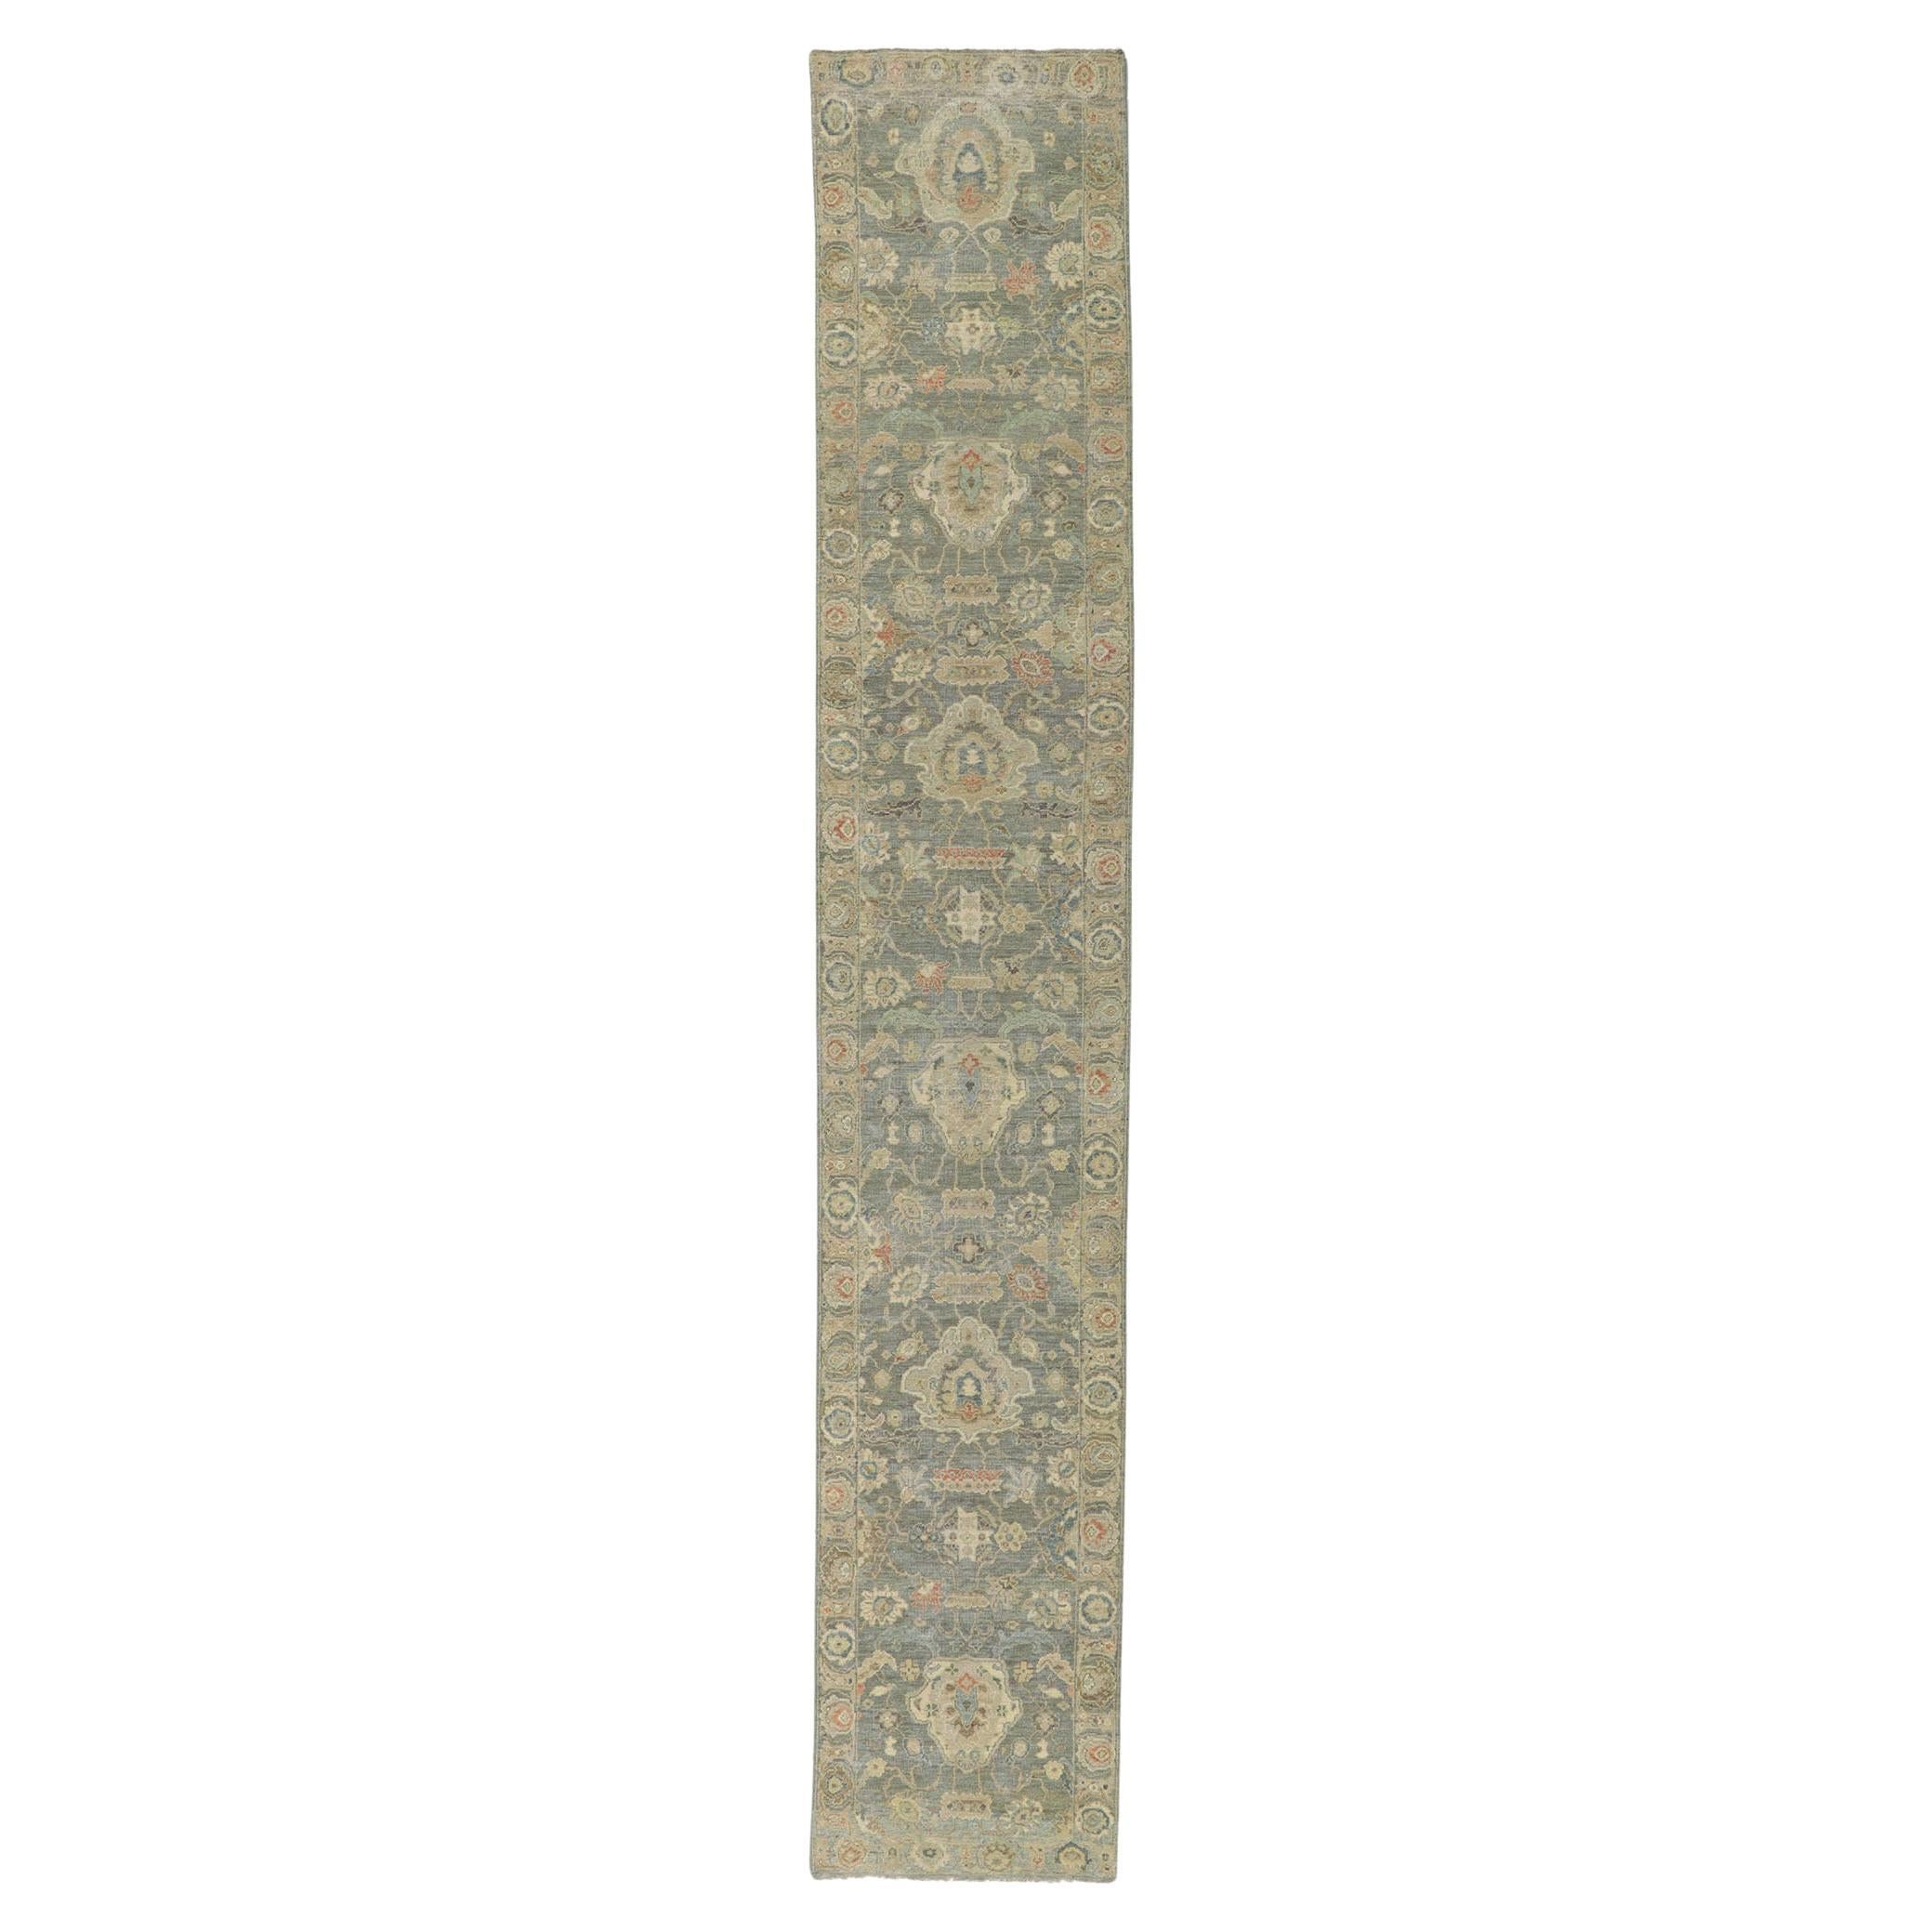 Vintage-inspirierter moderner Oushak-Teppich: Natürliche Eleganz trifft auf zeitlose Anziehungskraft im Angebot